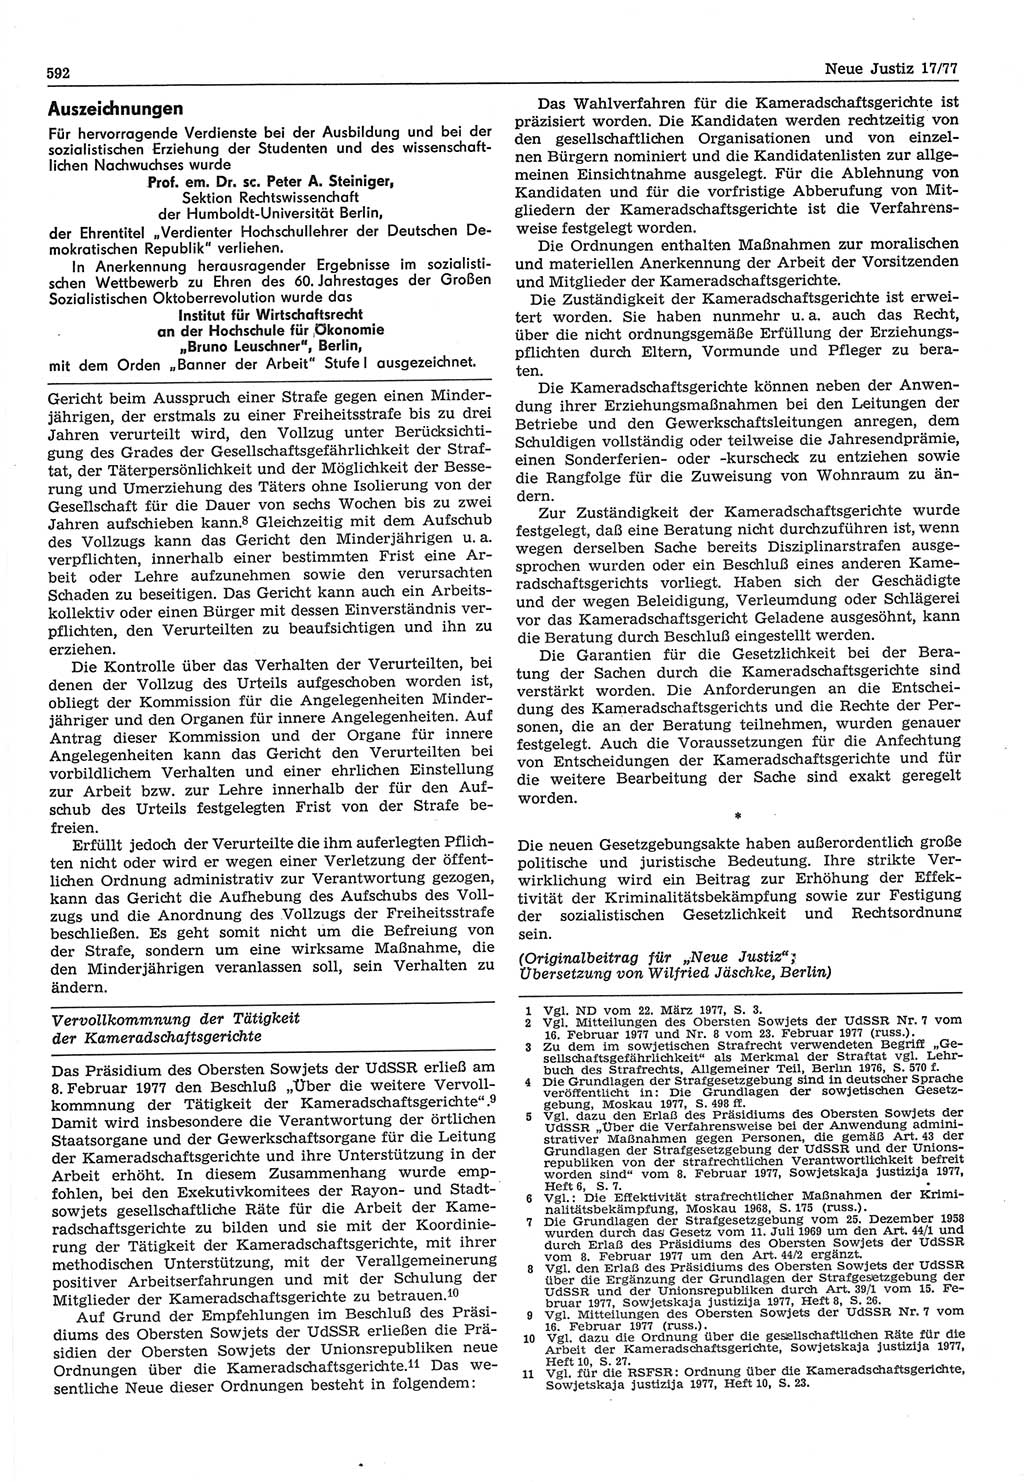 Neue Justiz (NJ), Zeitschrift für Recht und Rechtswissenschaft-Zeitschrift, sozialistisches Recht und Gesetzlichkeit, 31. Jahrgang 1977, Seite 592 (NJ DDR 1977, S. 592)